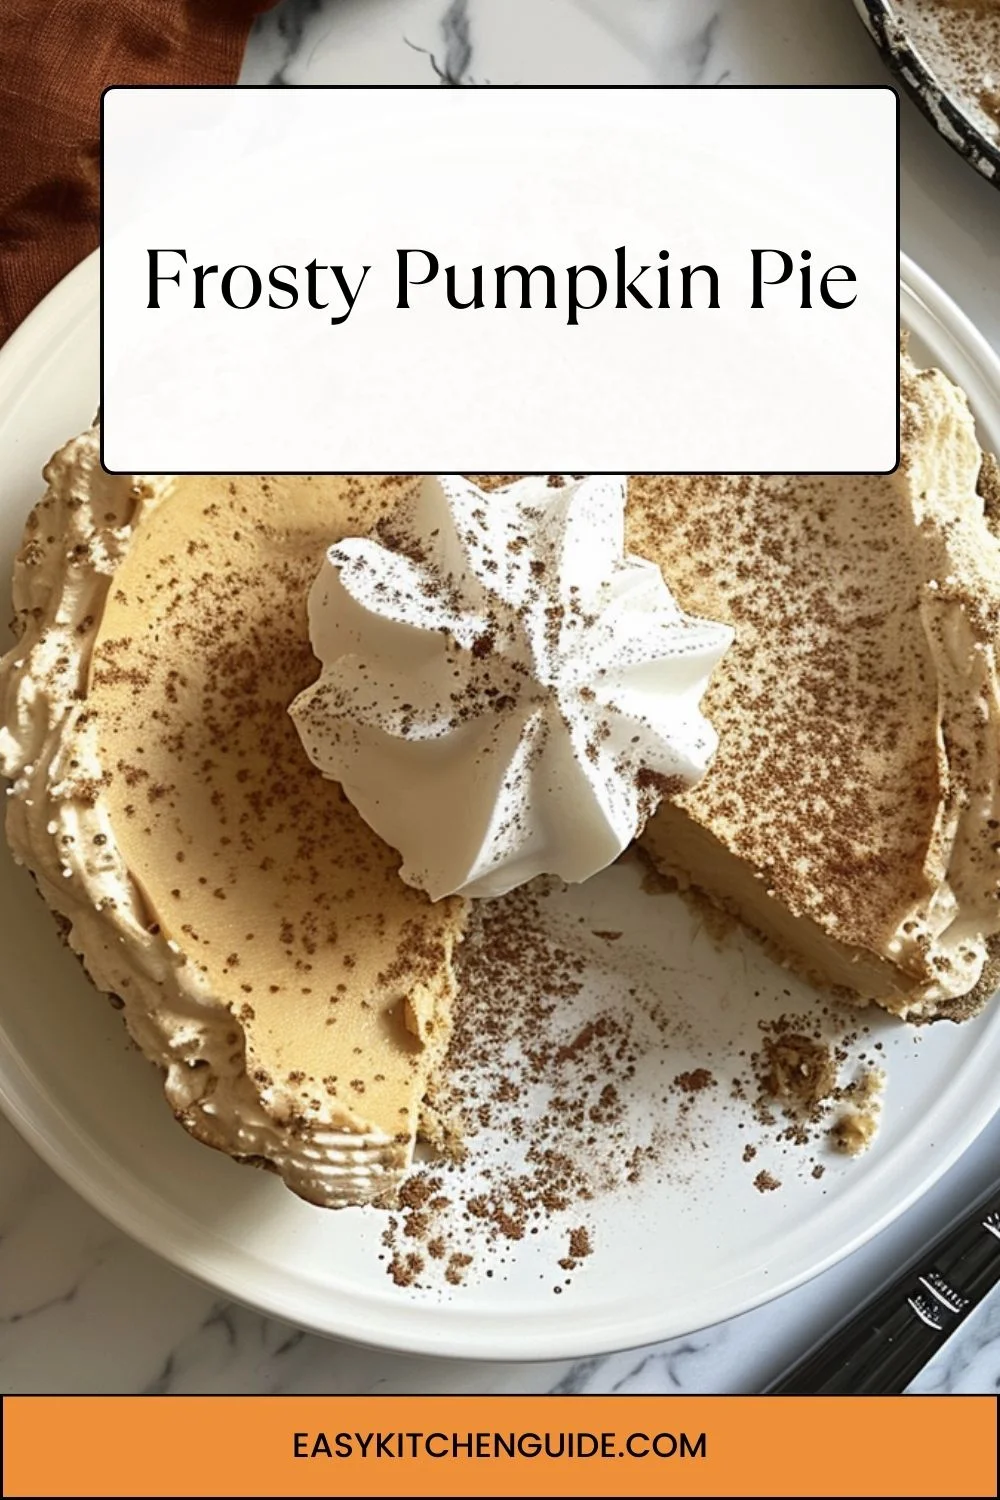 Frosty Pumpkin Pie